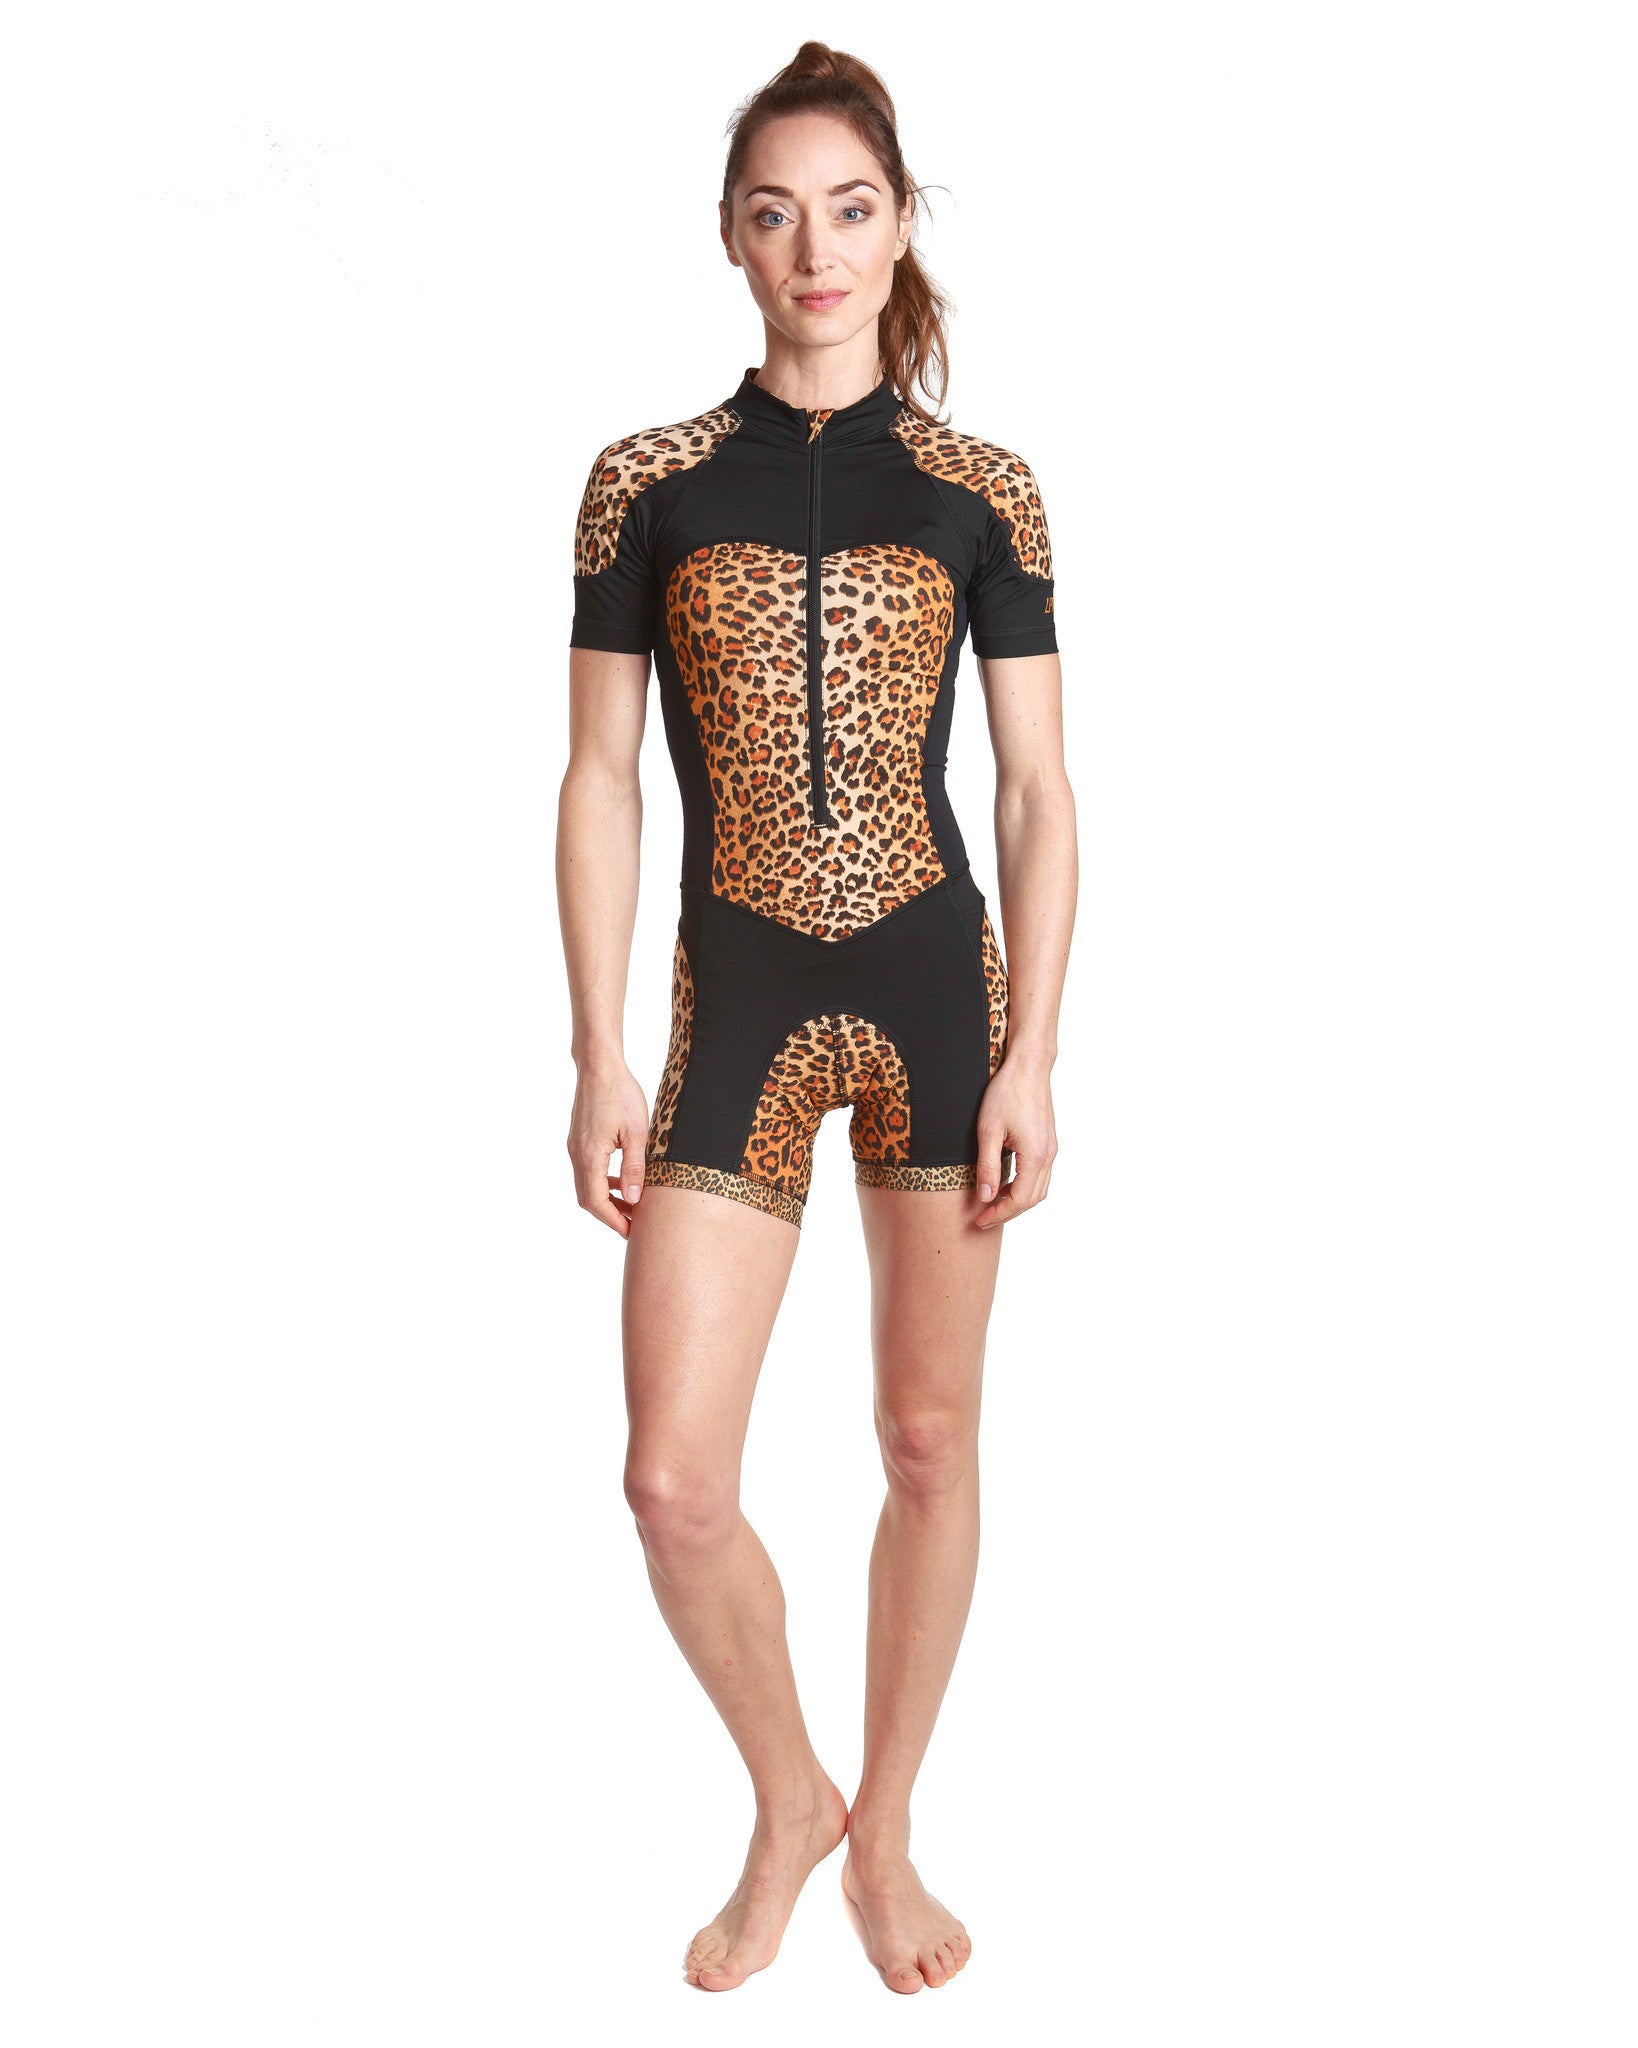 Kafitt Women's Cycling Jumpsuit Leopard Print Clothing Summer Long